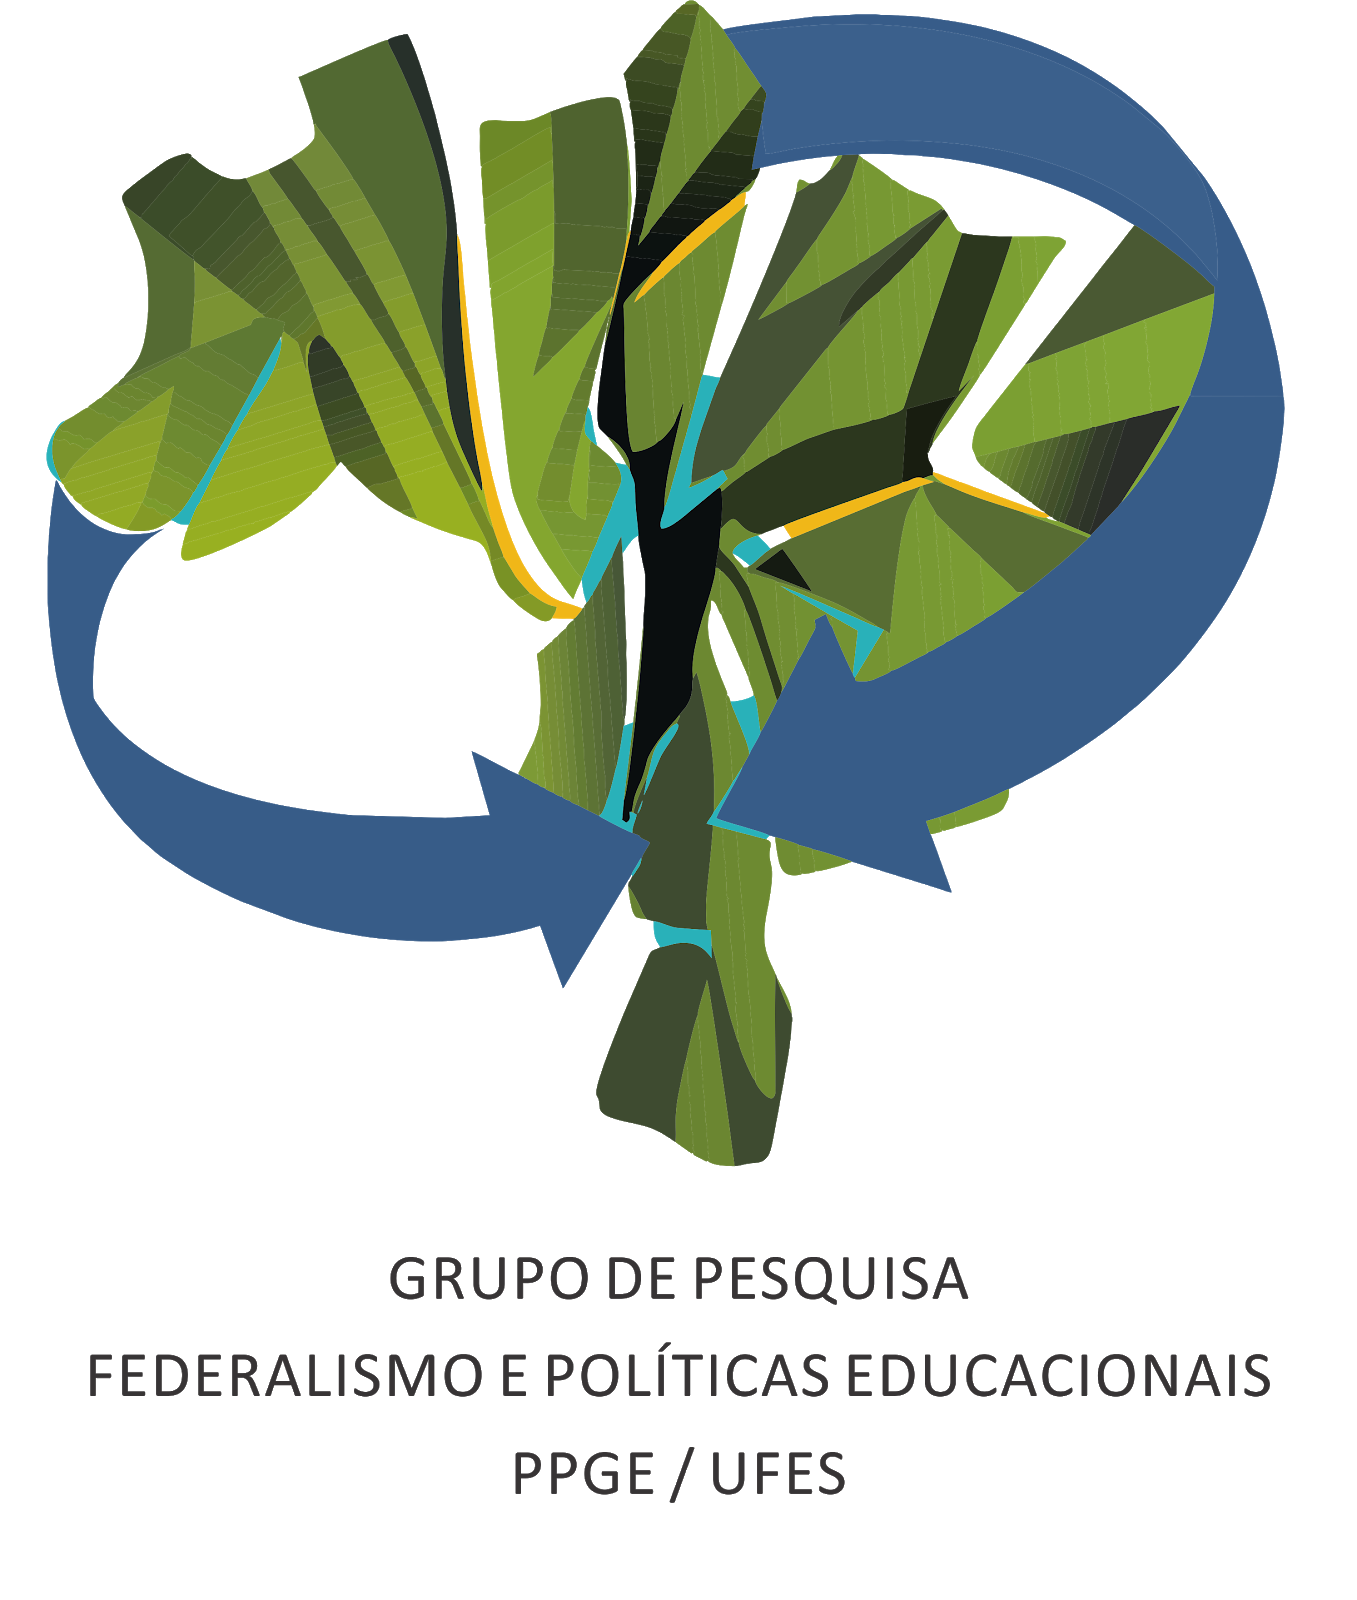 Grupo de Pesquisa Federalismo e Políticas Educacionais